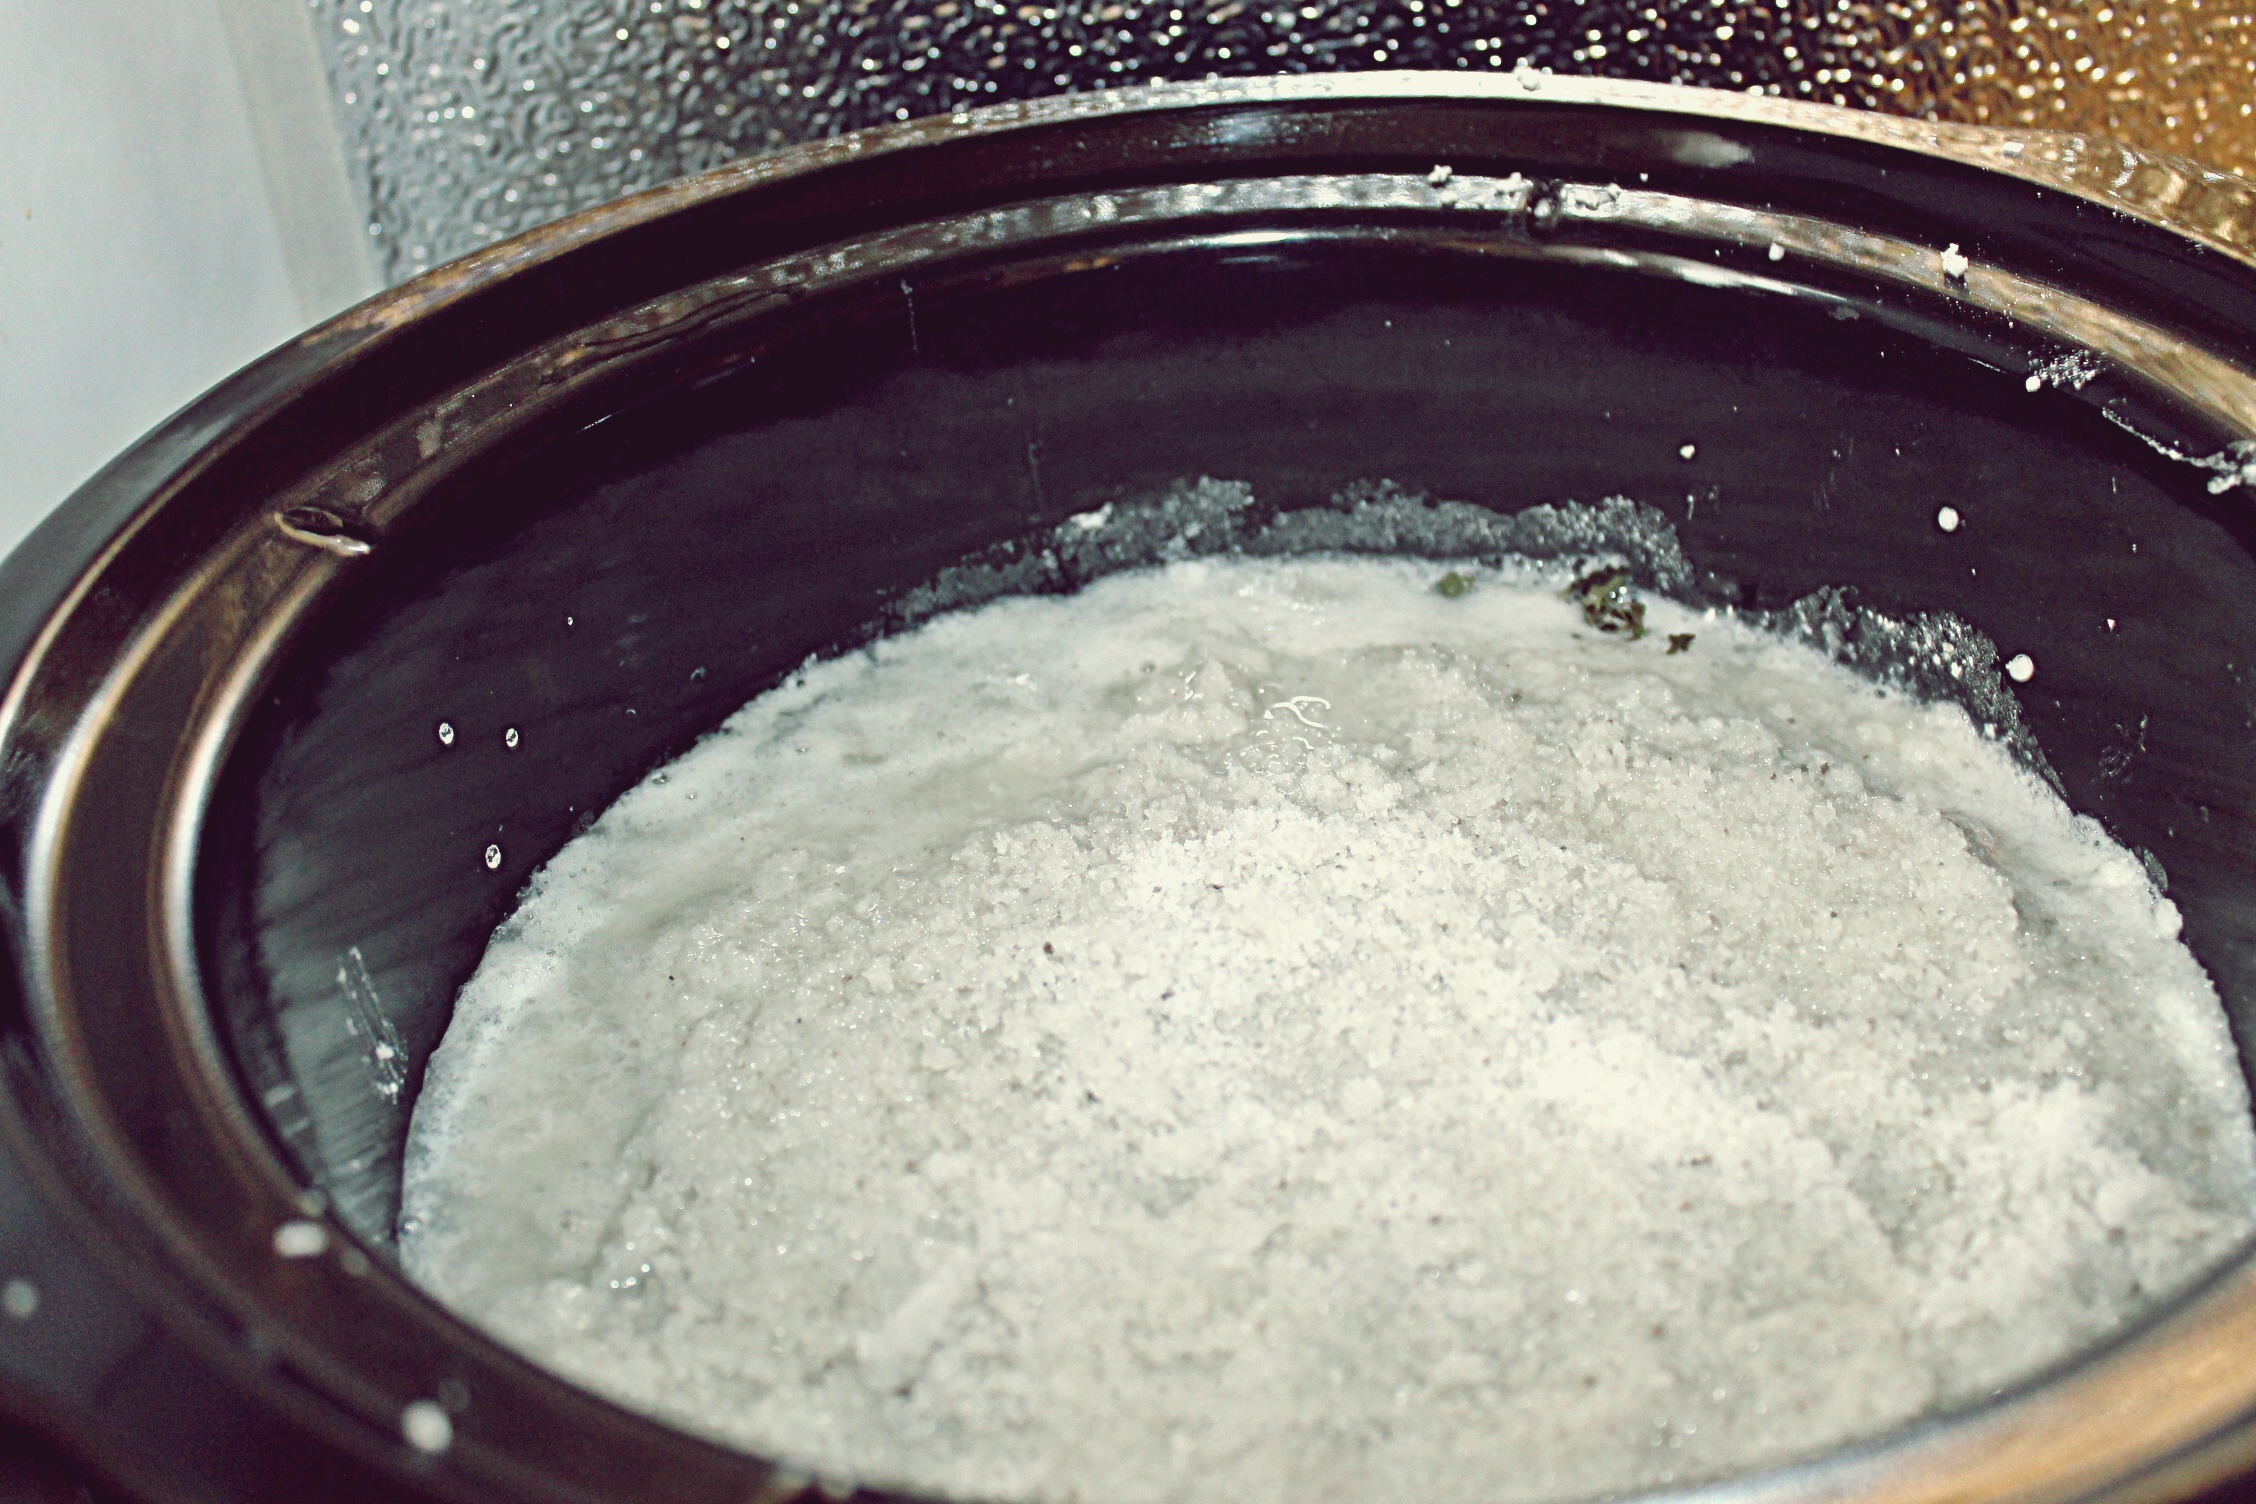 Cartofi in crusta de sare la slow cooker Crock Pot